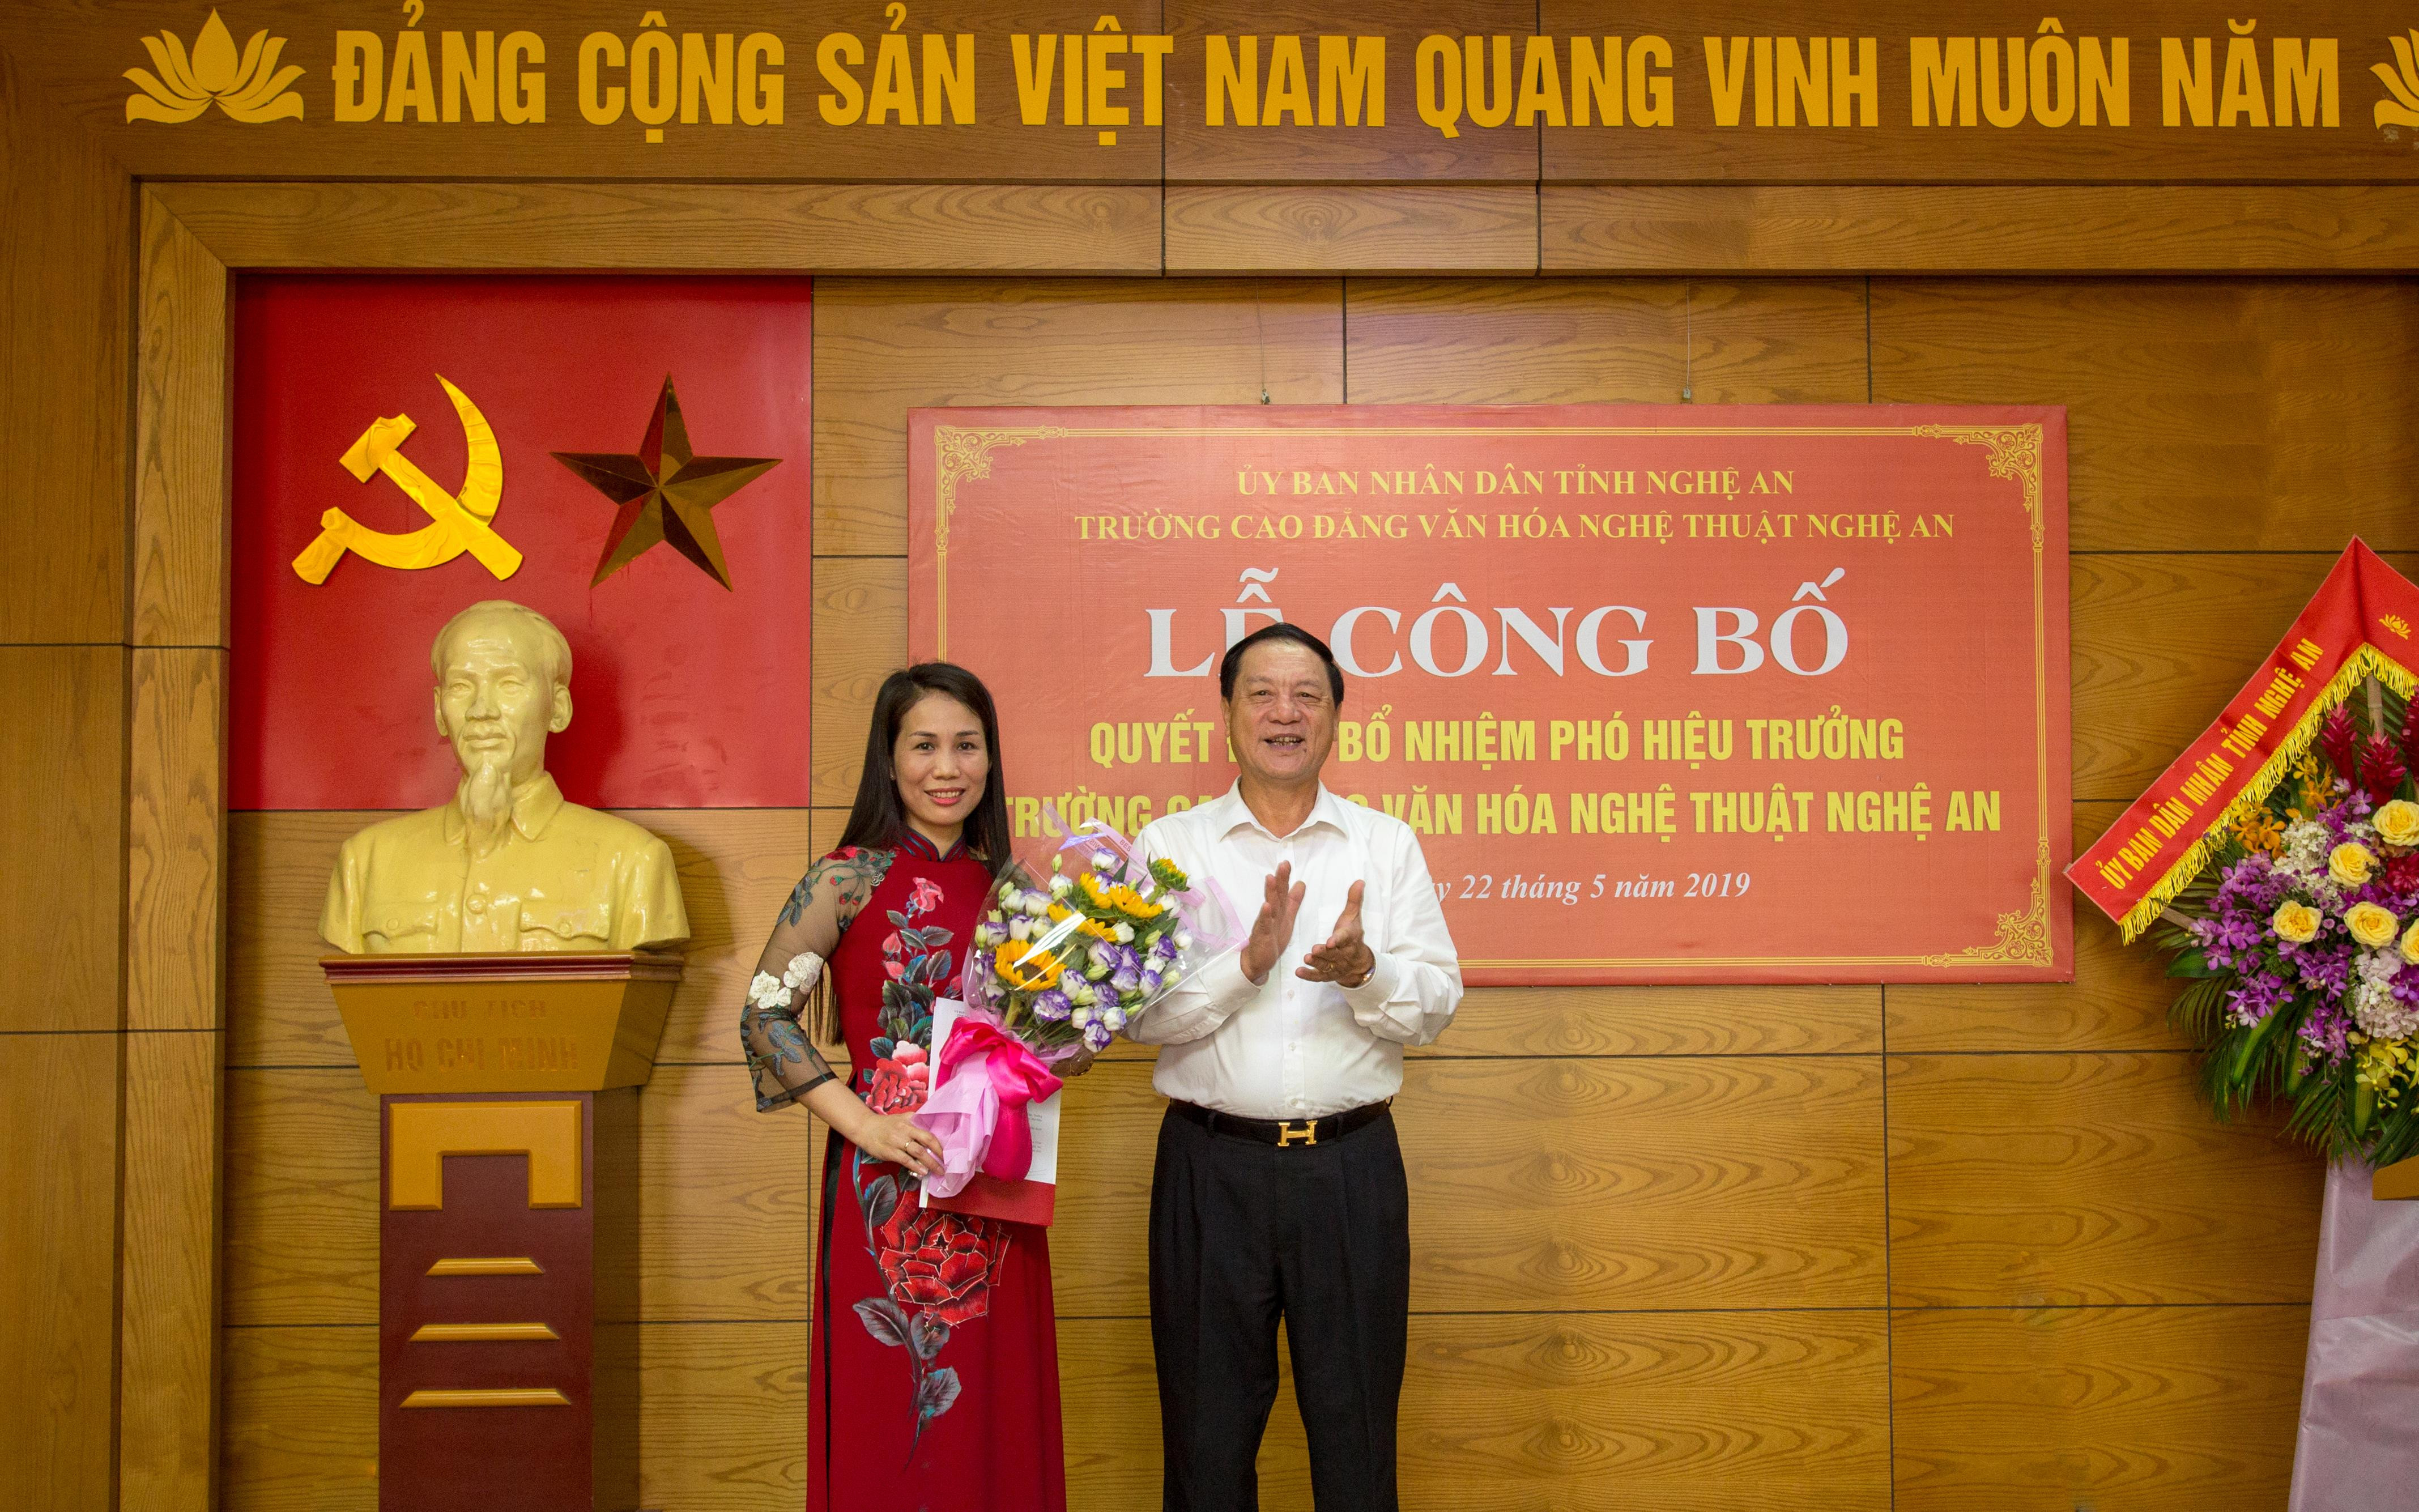 Đồng chí Lê Minh Thông trao quyết định bổ nhiệm cho đồng chí Nguyễn Thị Thanh Đức. Ảnh: Quang Sáng